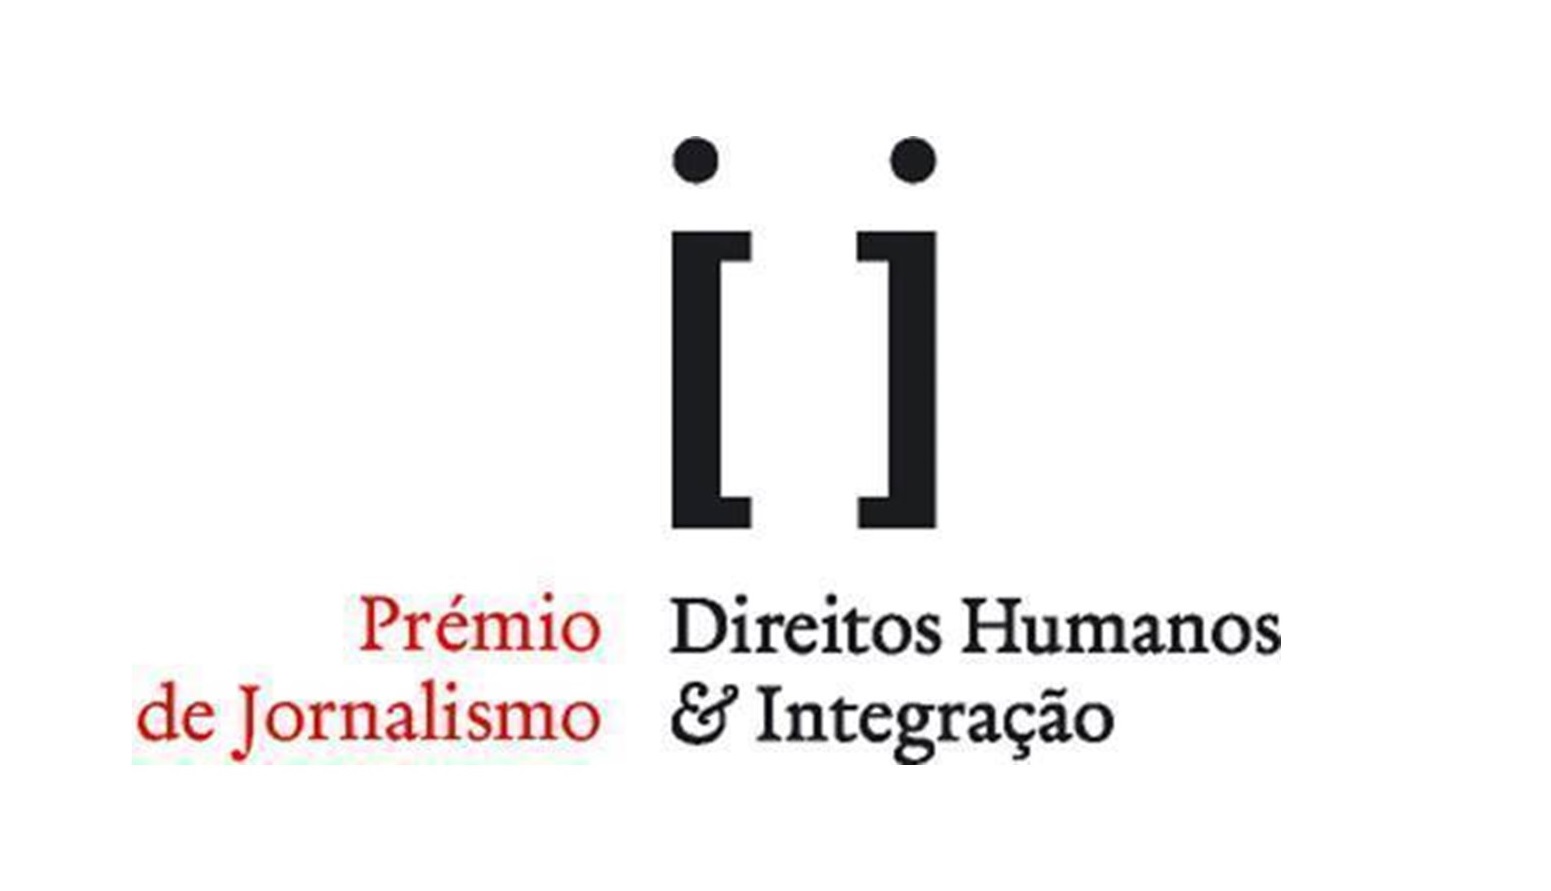 Prémio de Jornalismo "Direitos Humanos & Integração” irá ser atribuído pela CNU e SGPCM